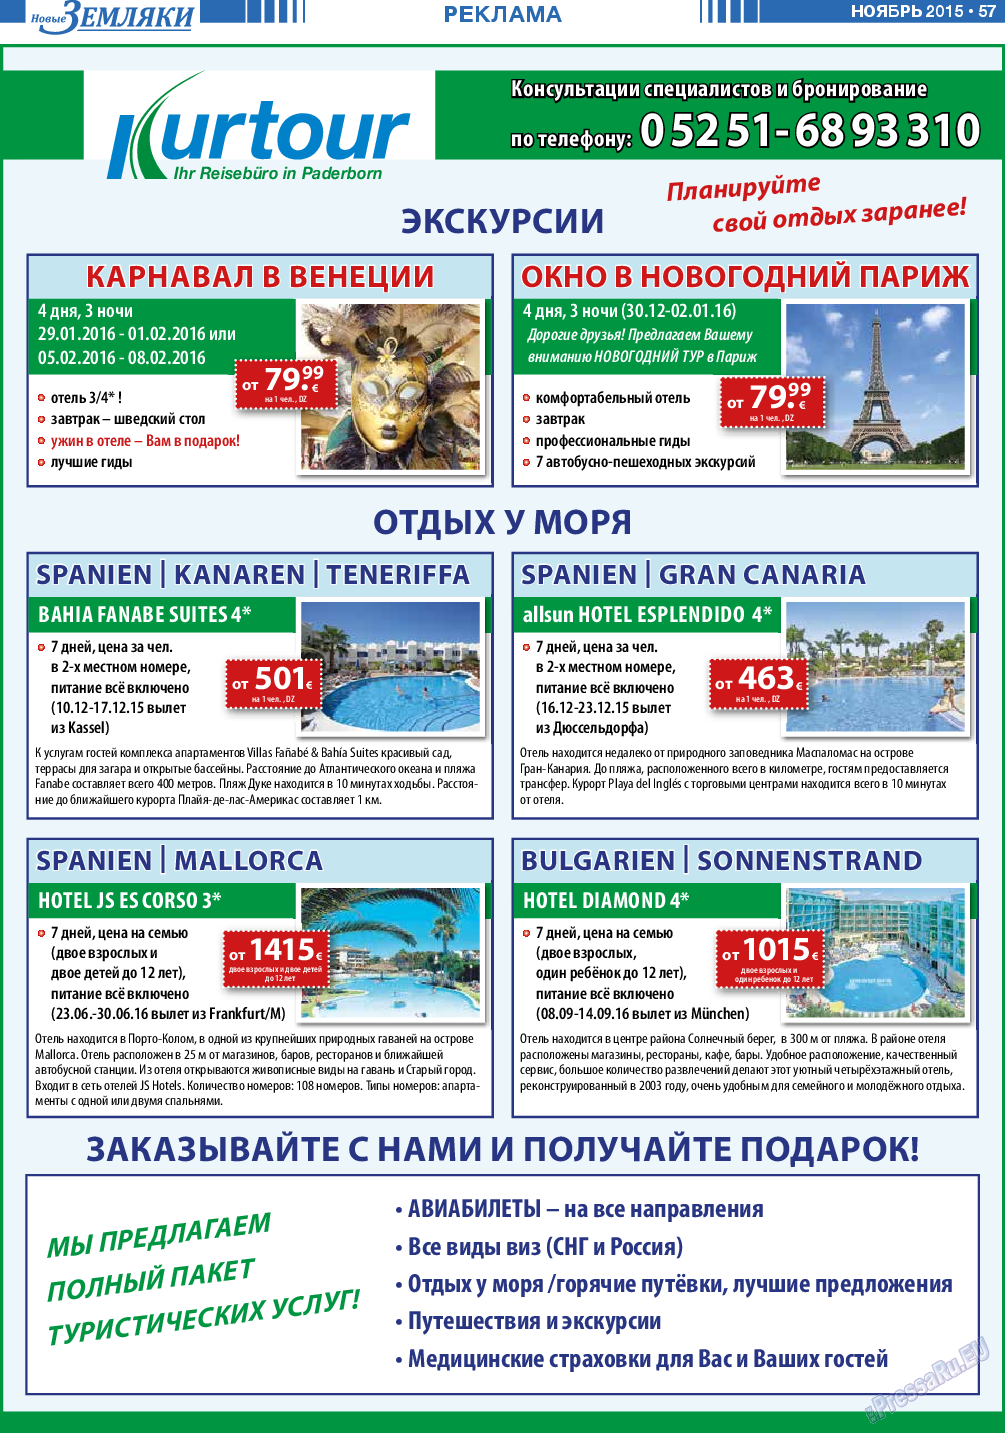 Новые Земляки (газета). 2015 год, номер 11, стр. 57